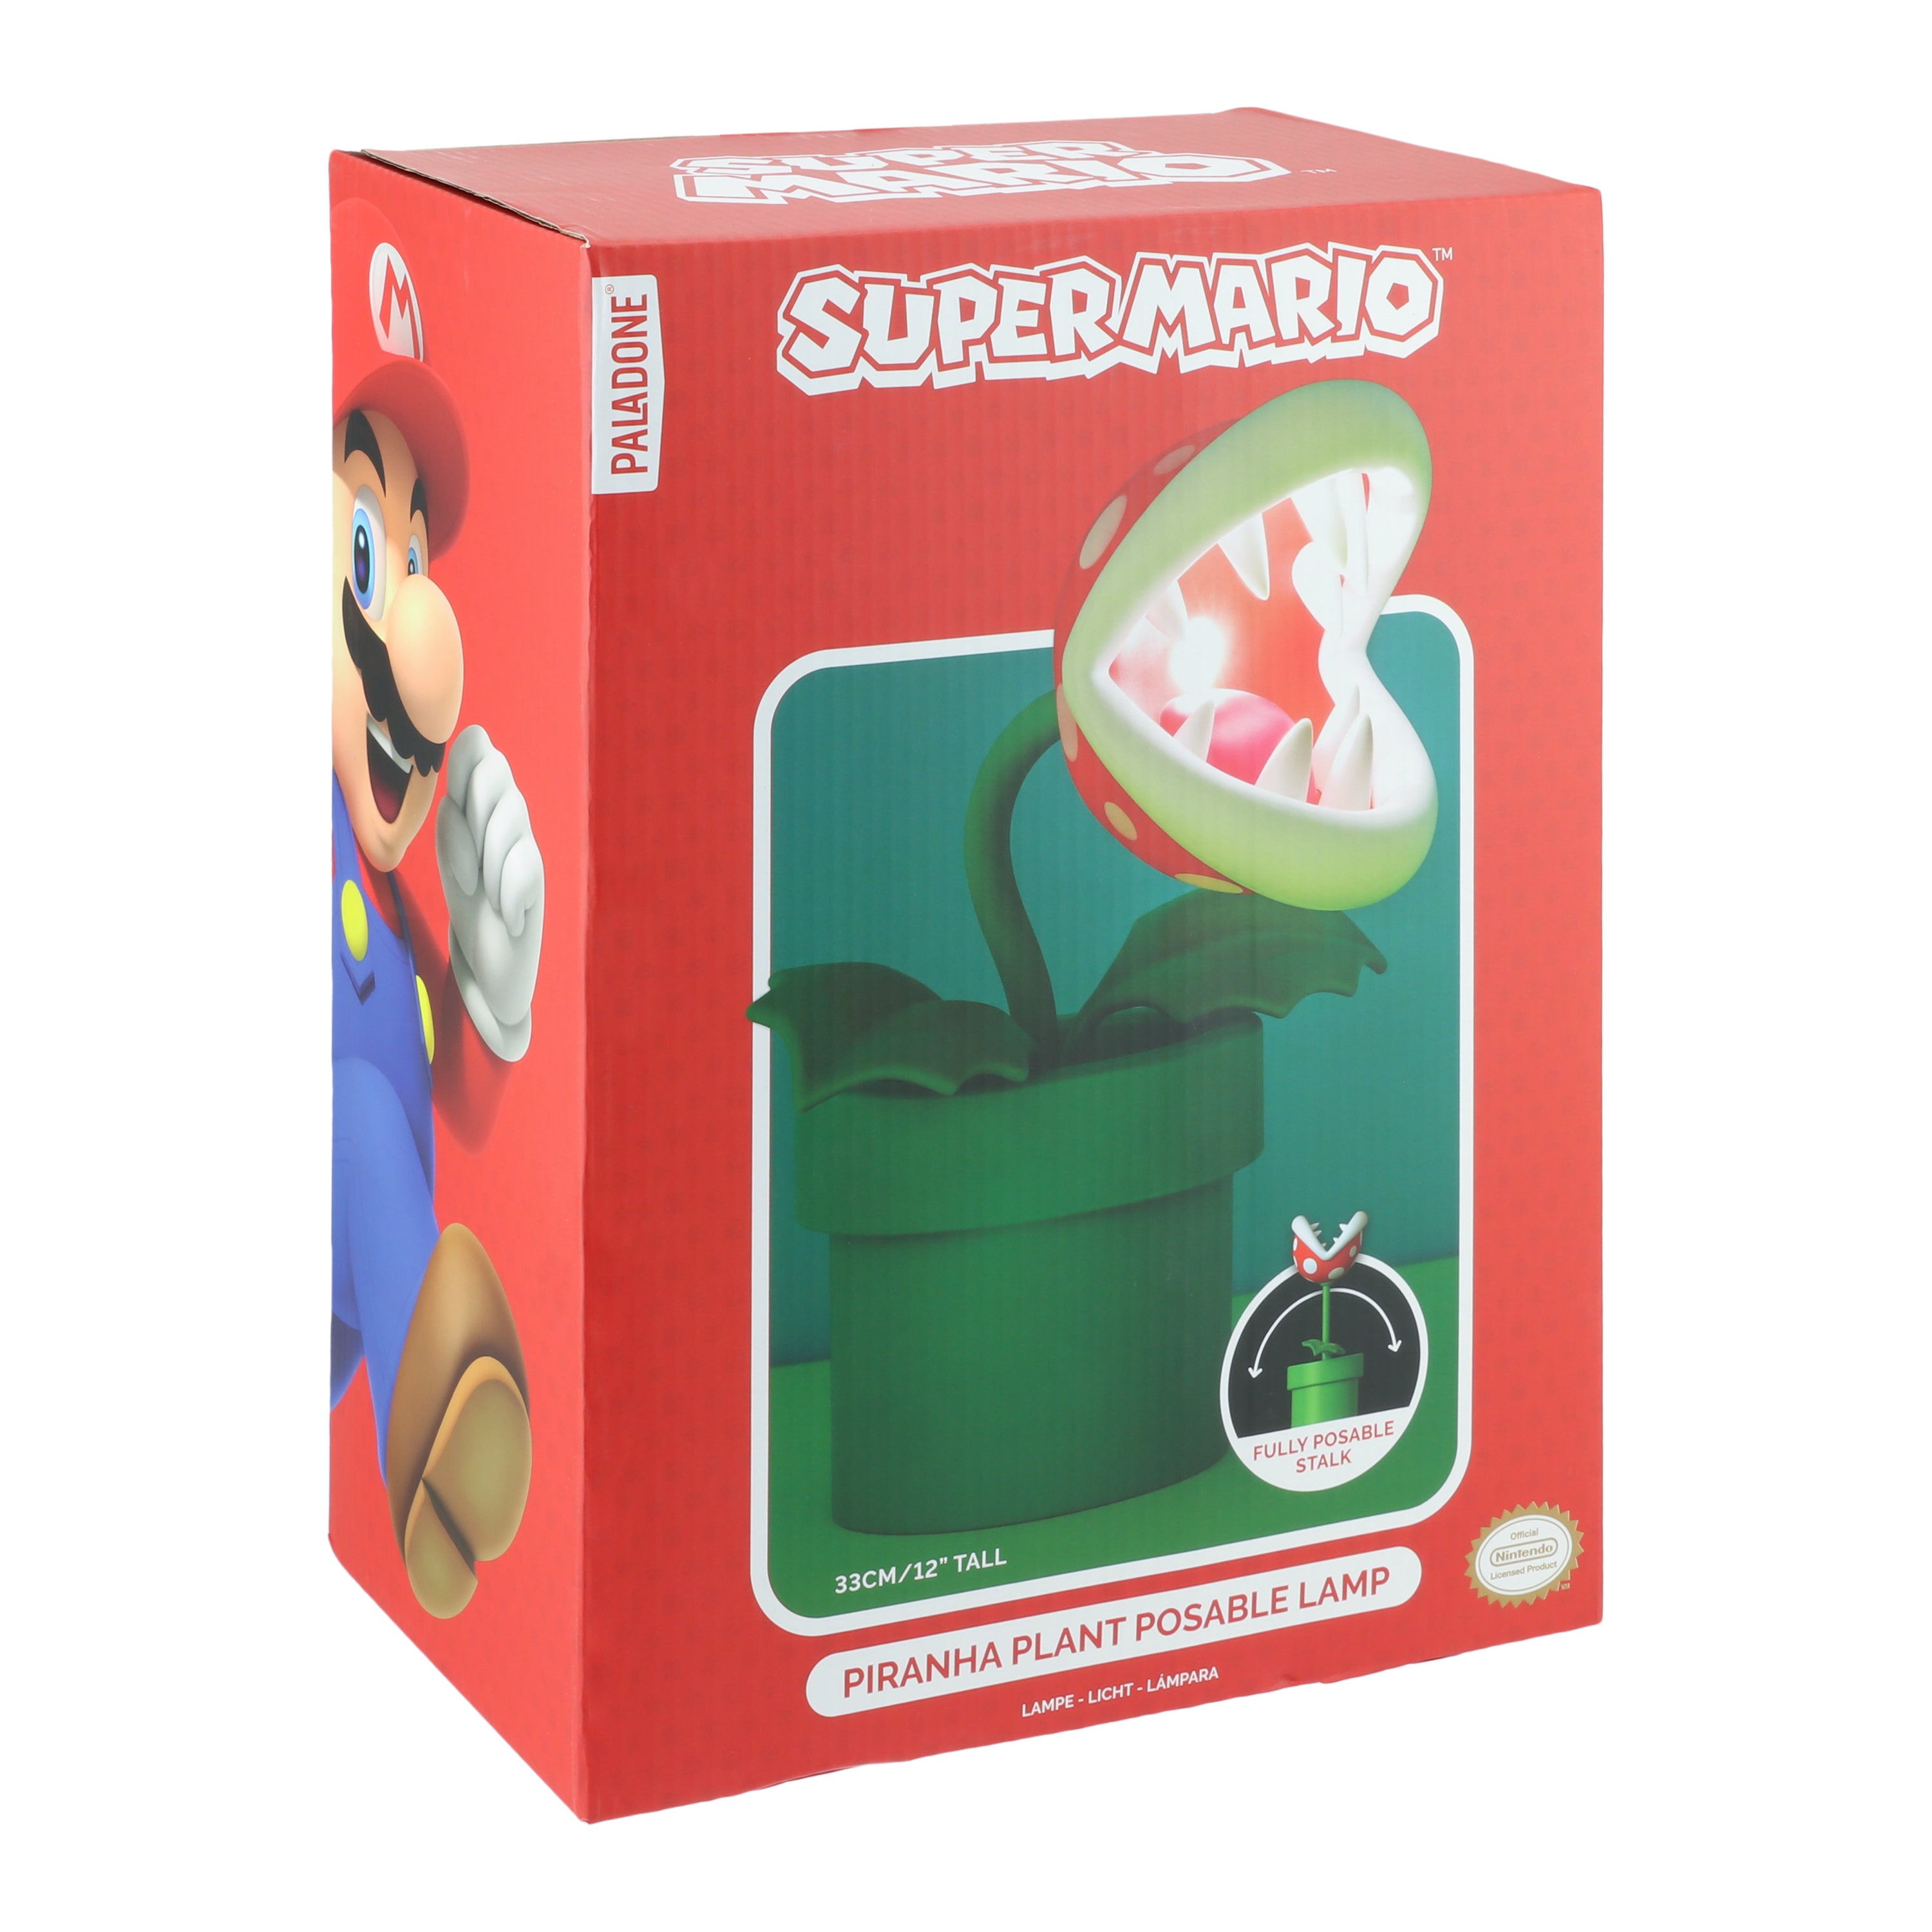 Super Mario Piranha Plant Lamp